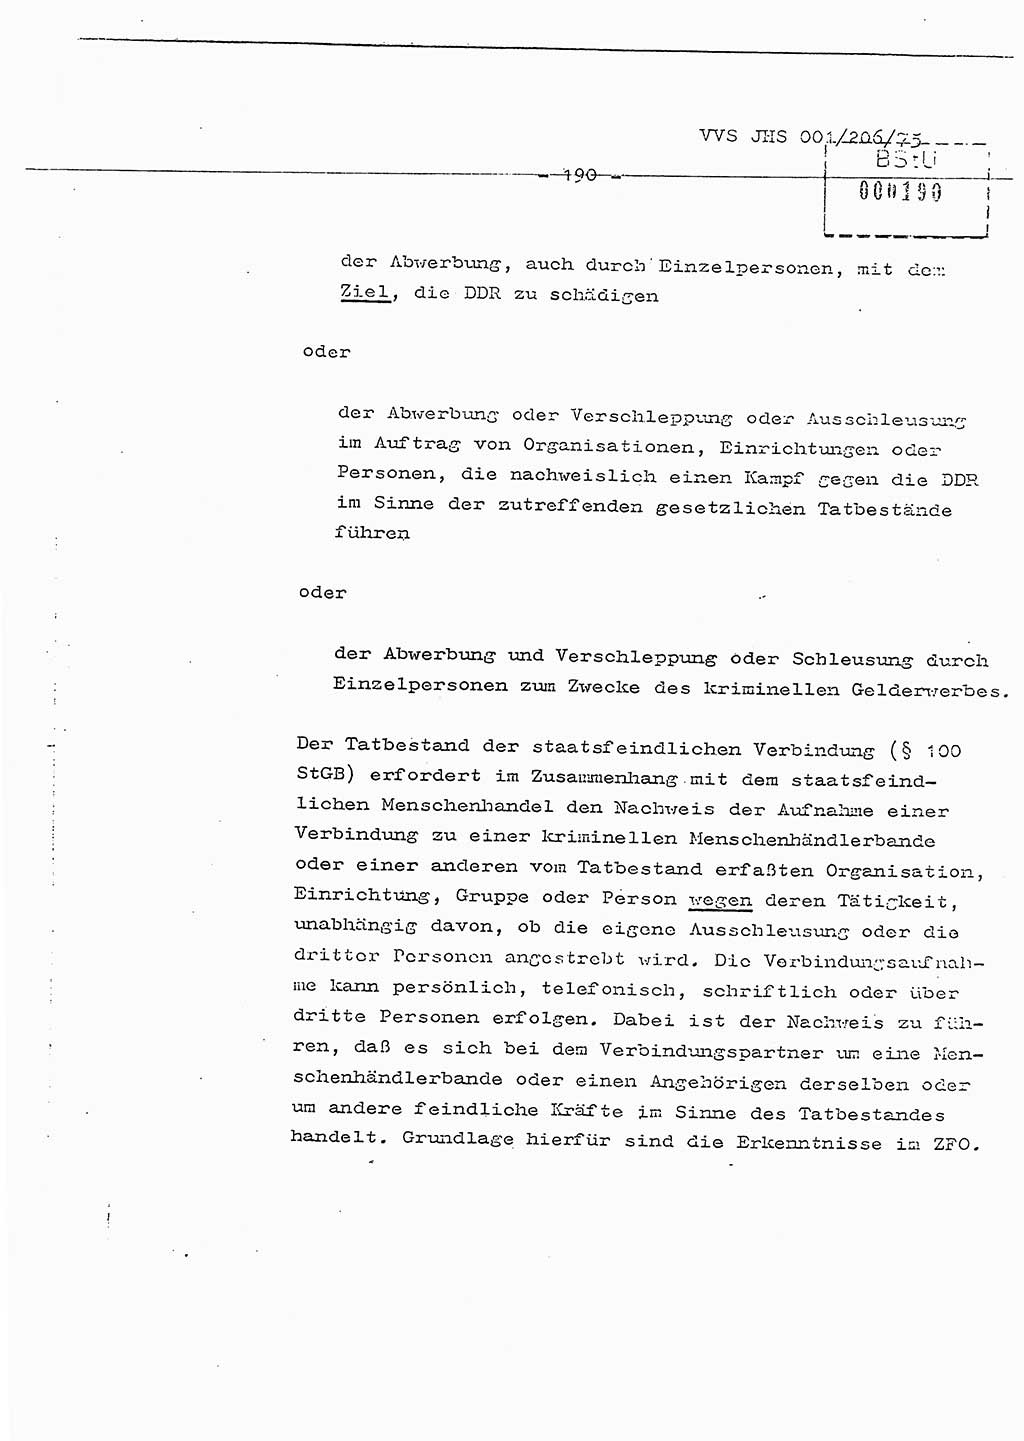 Dissertation Generalmajor Manfred Hummitzsch (Leiter der BV Leipzig), Generalmajor Heinz Fiedler (HA Ⅵ), Oberst Rolf Fister (HA Ⅸ), Ministerium für Staatssicherheit (MfS) [Deutsche Demokratische Republik (DDR)], Juristische Hochschule (JHS), Vertrauliche Verschlußsache (VVS) 001-206/75, Potsdam 1975, Seite 190 (Diss. MfS DDR JHS VVS 001-206/75 1975, S. 190)